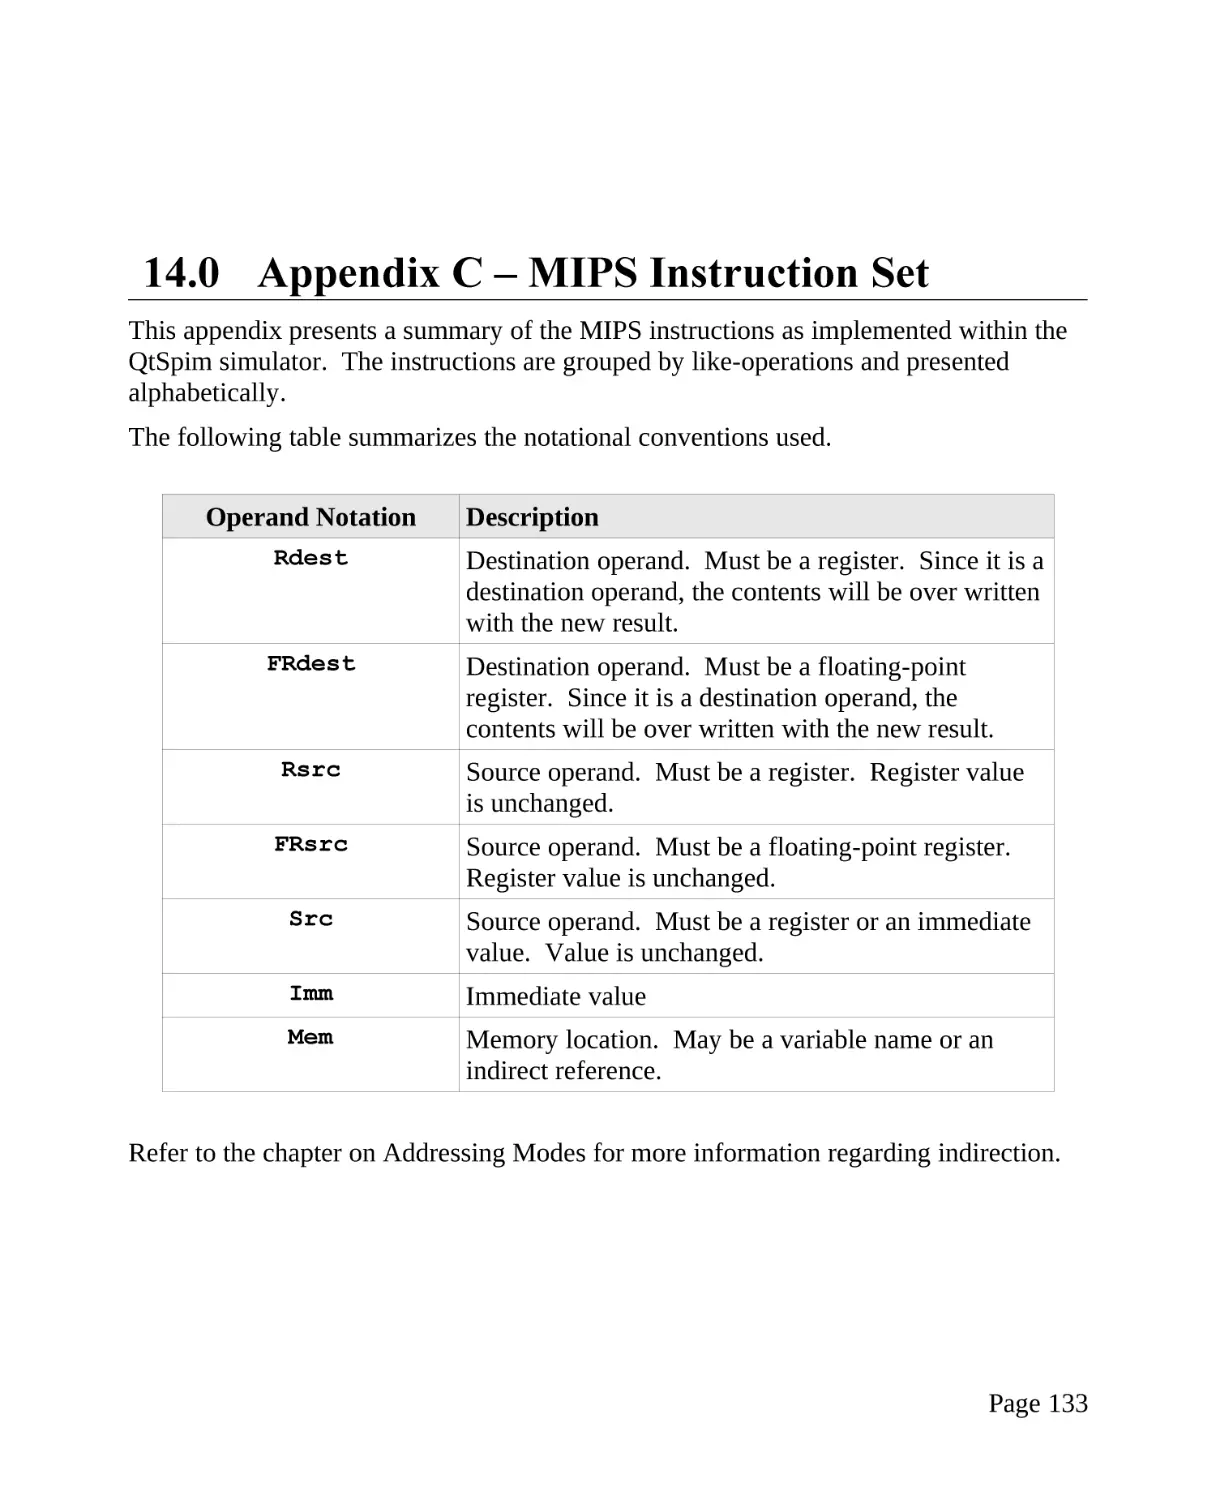 14.0 Appendix C – MIPS Instruction Set